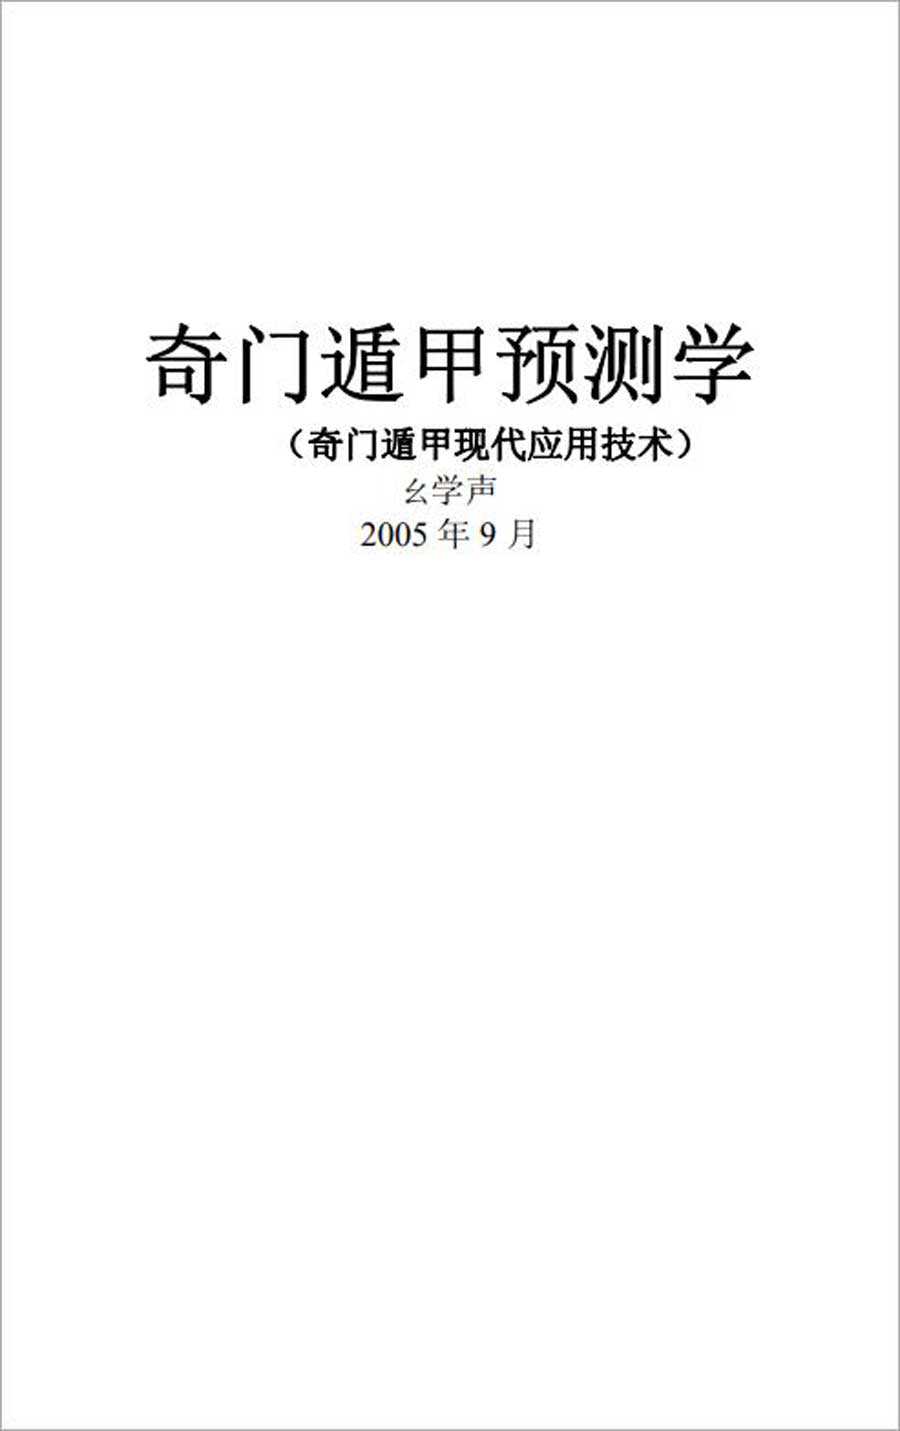 Missy Xuesheng – Qi Men Dun Jia Forecasting (Qi Men Dun Jia Modern Application Technology) 285 pages.pdf